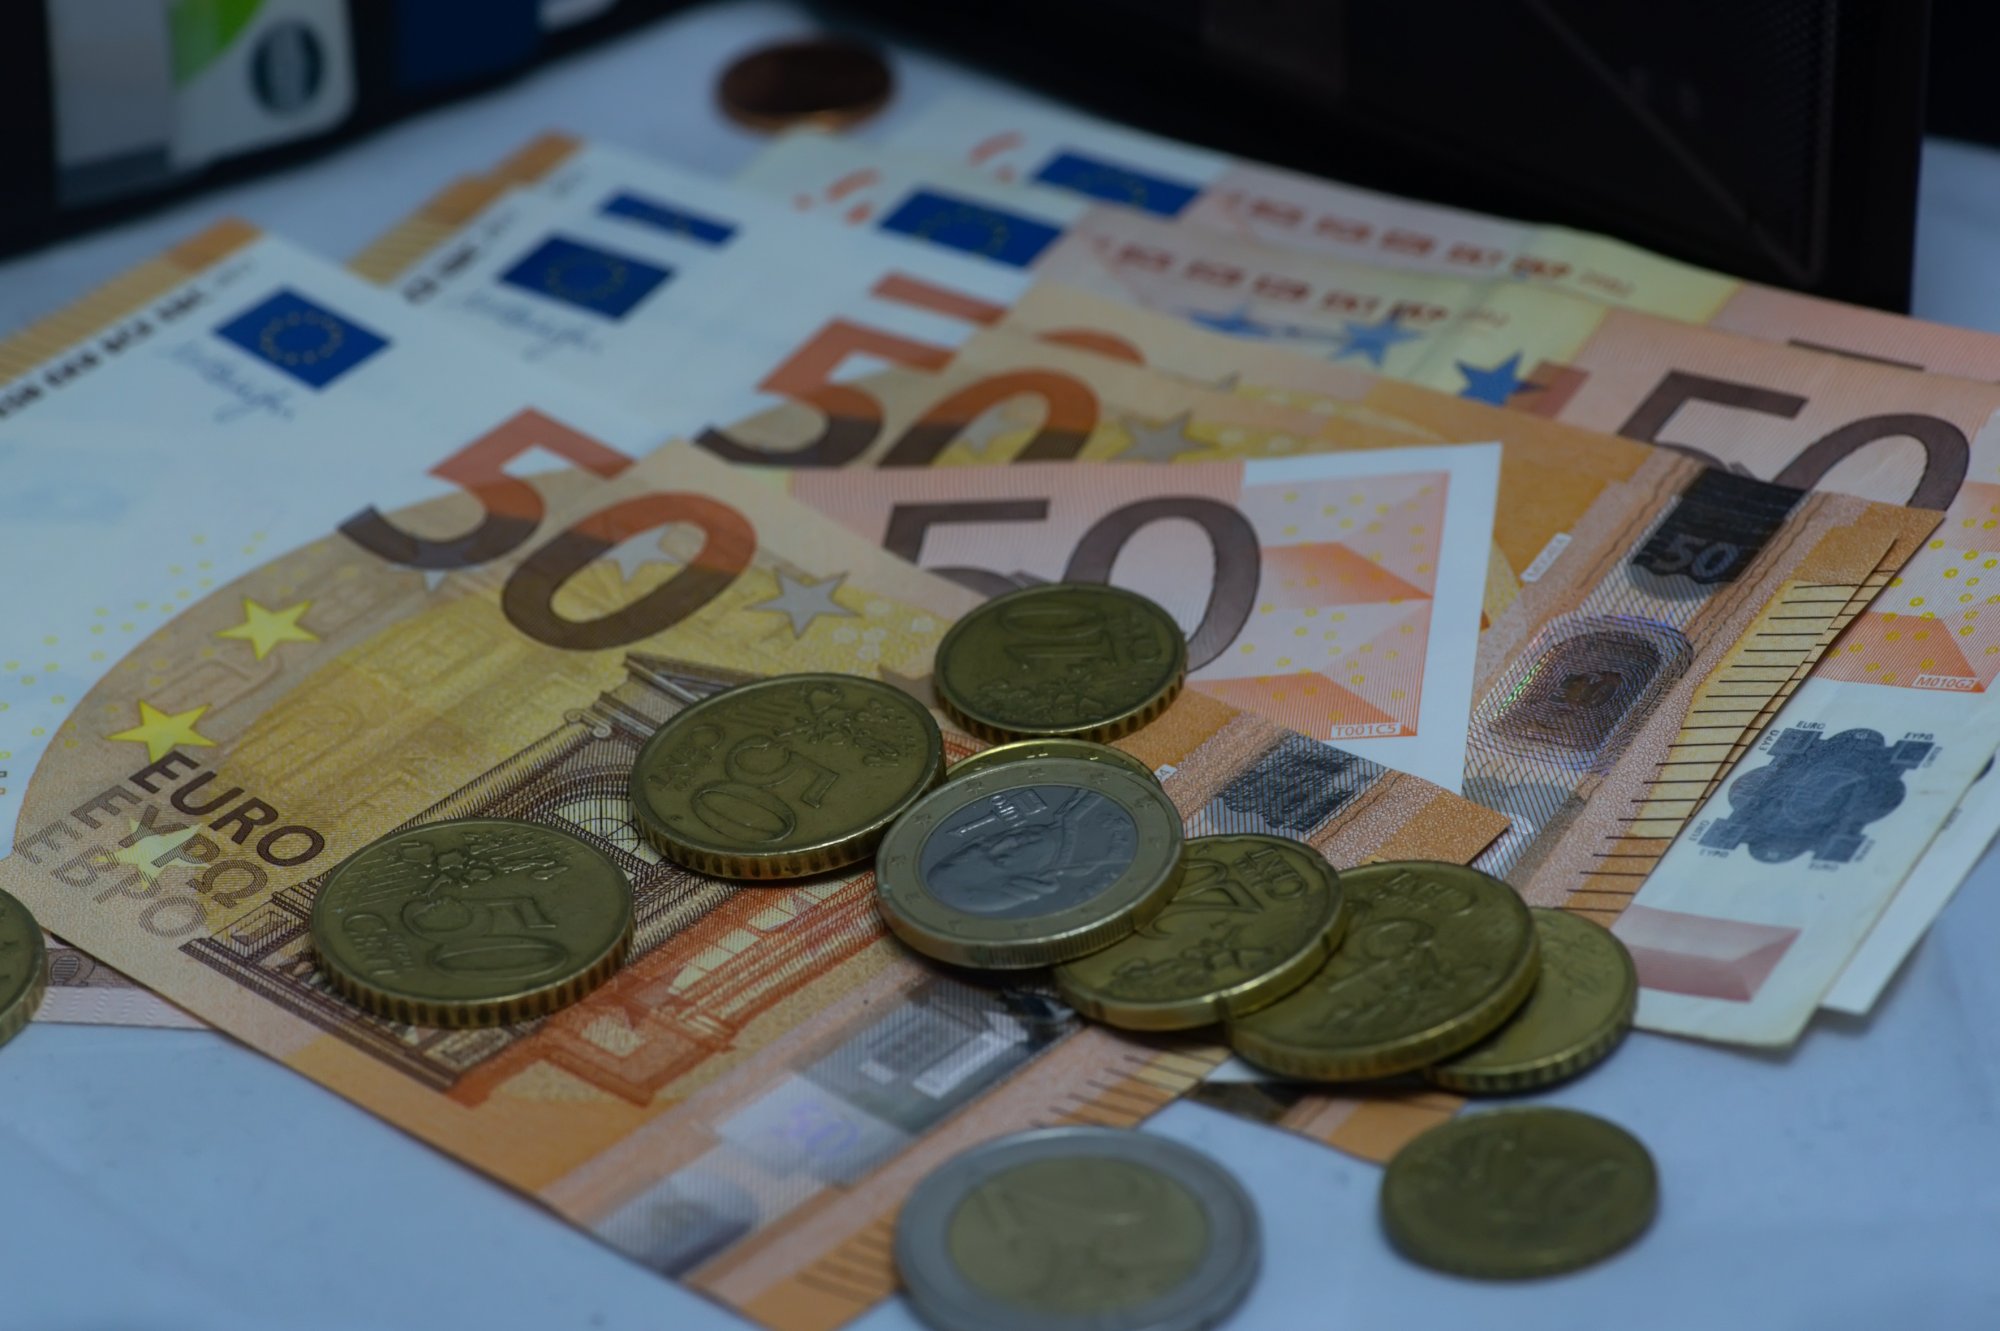 Μητσοτάκης: Στα 830 ευρώ ο κατώτατος μισθός - Τι είπε στο υπουργικό συμβούλιο